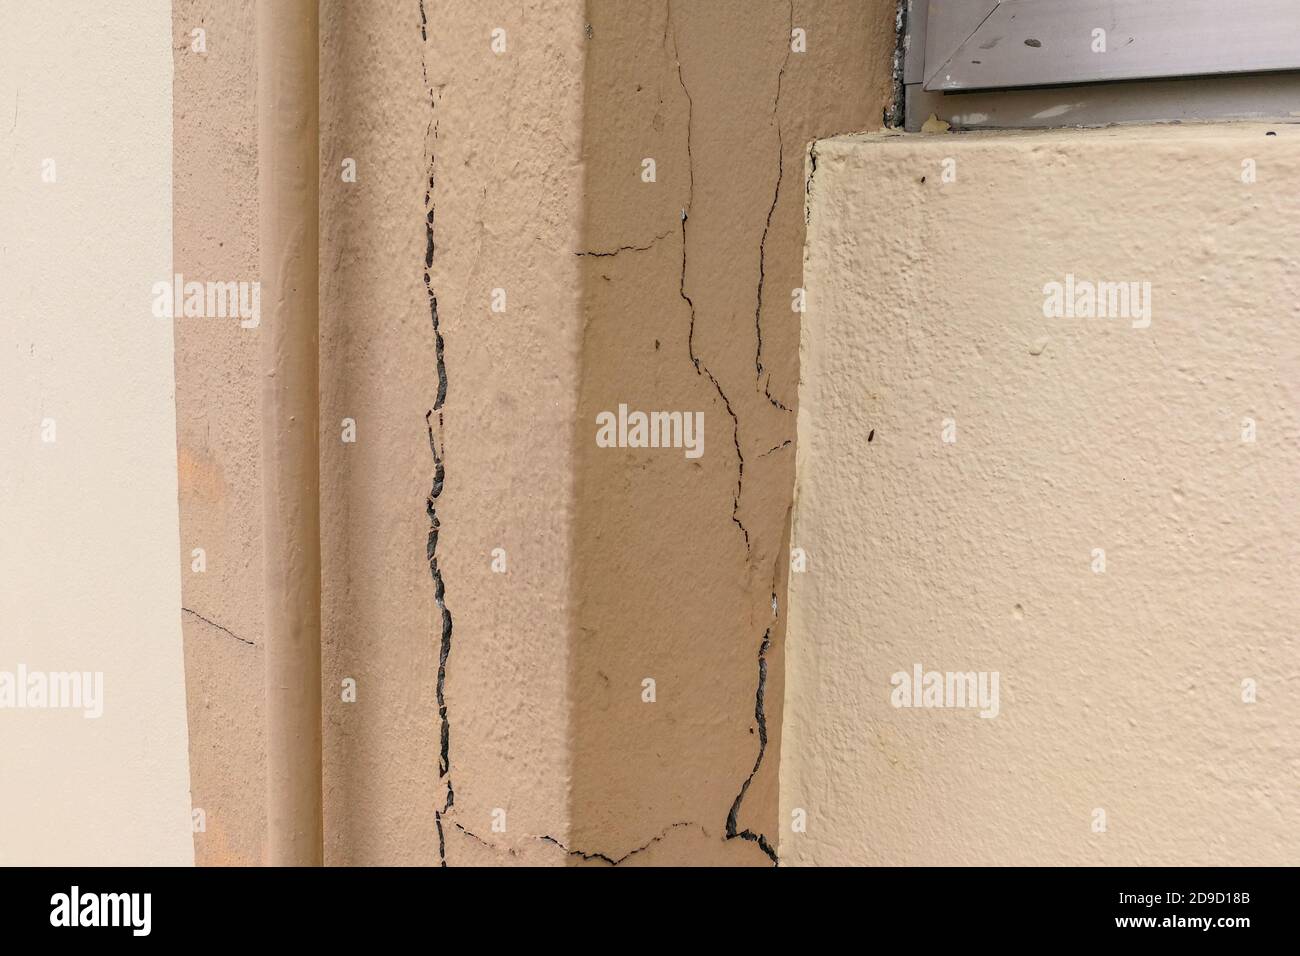 La rottura di un montante difettoso dell'edificio può costituire un pericolo per la sicurezza Foto Stock